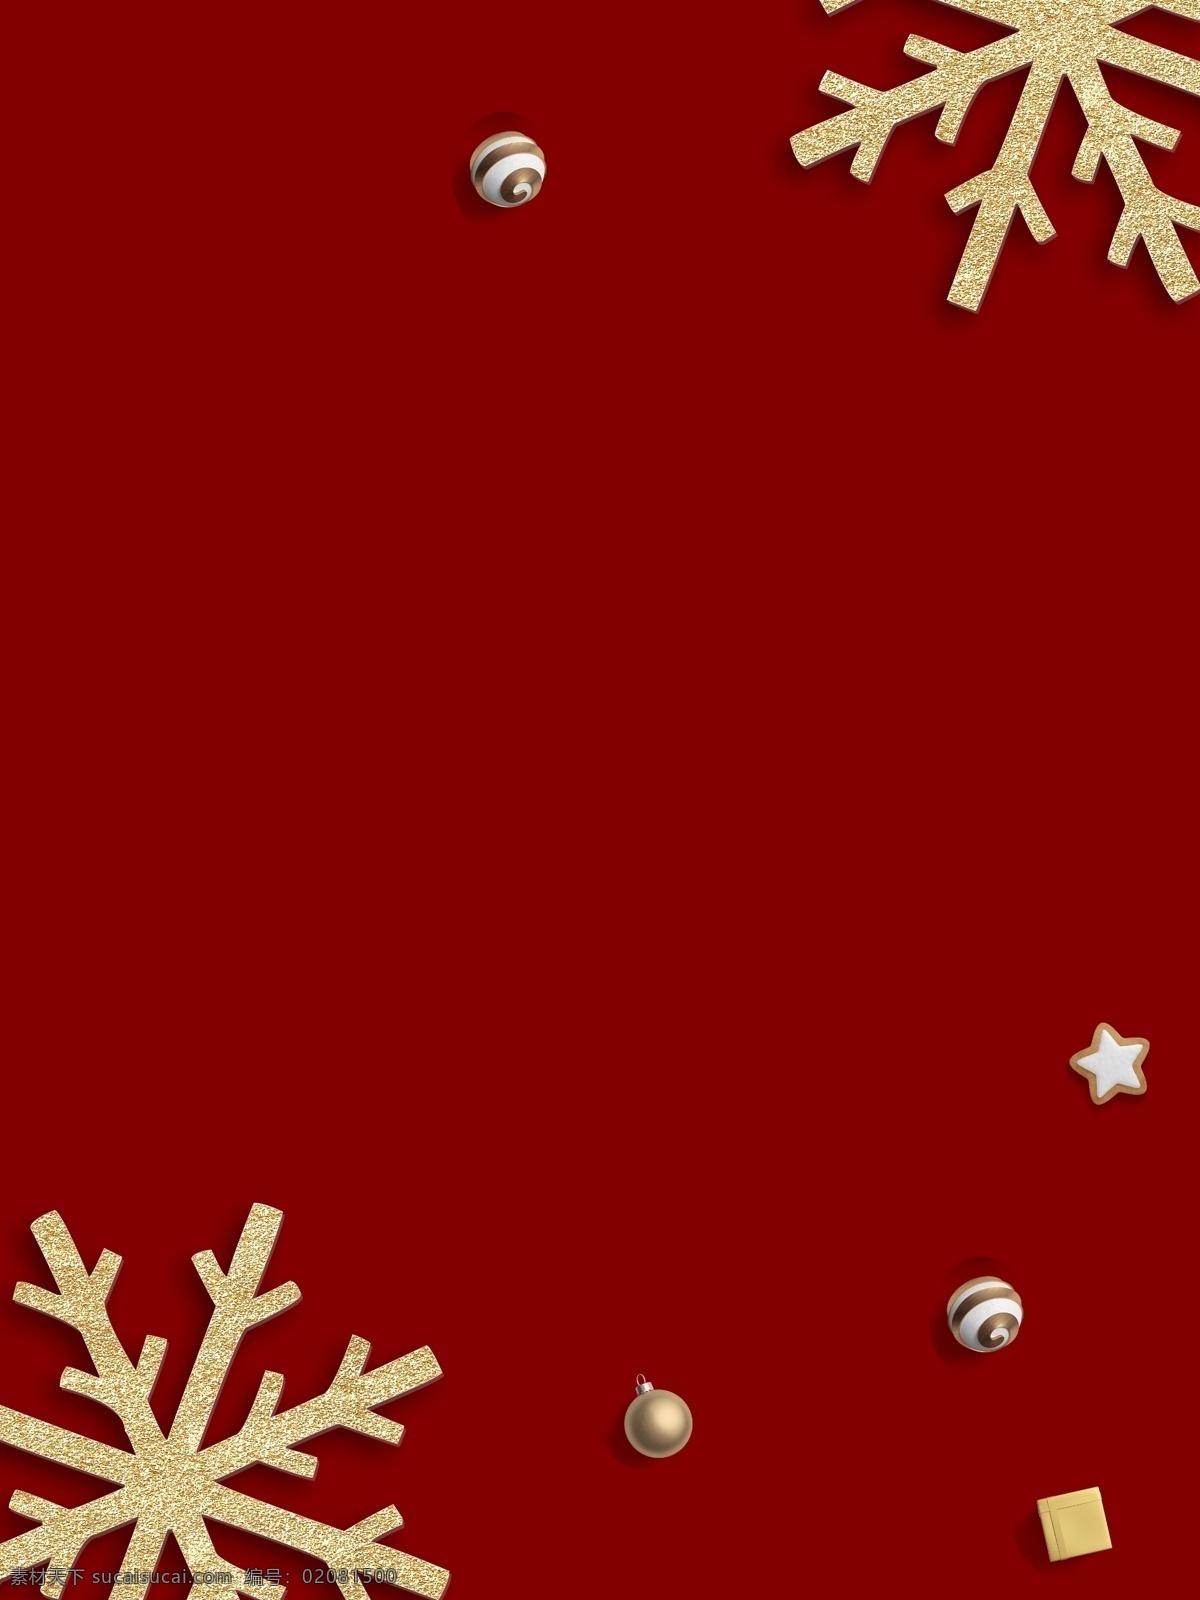 红 金色 大气 圣诞 狂欢 节日 背景 质感 红色 圣诞节 卡通 水晶球 雪人 童趣 手绘